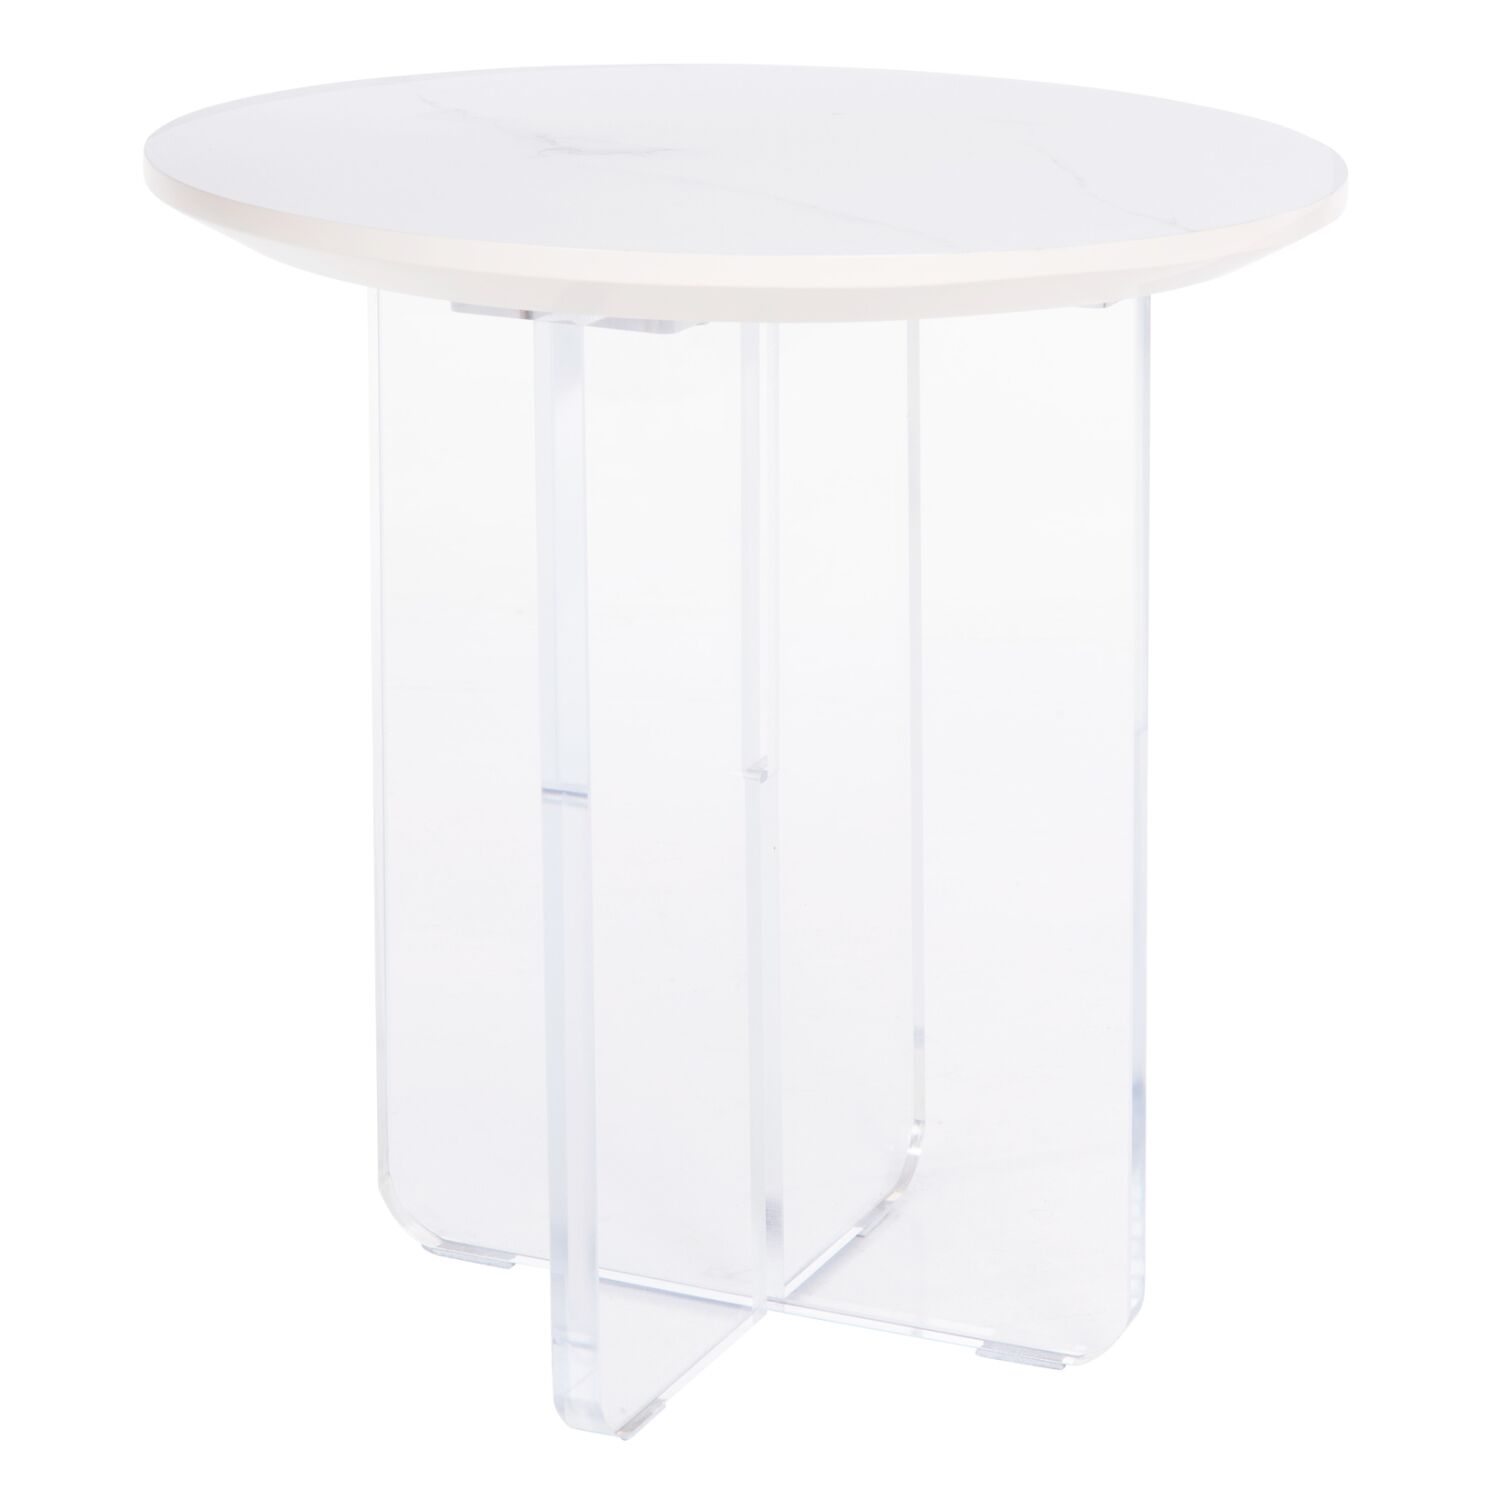 COFFEE TABLE ACRYLON HM9779.01 HPL WHITE MARBLE-ACRYLIC LEGS Φ40x41Hcm.